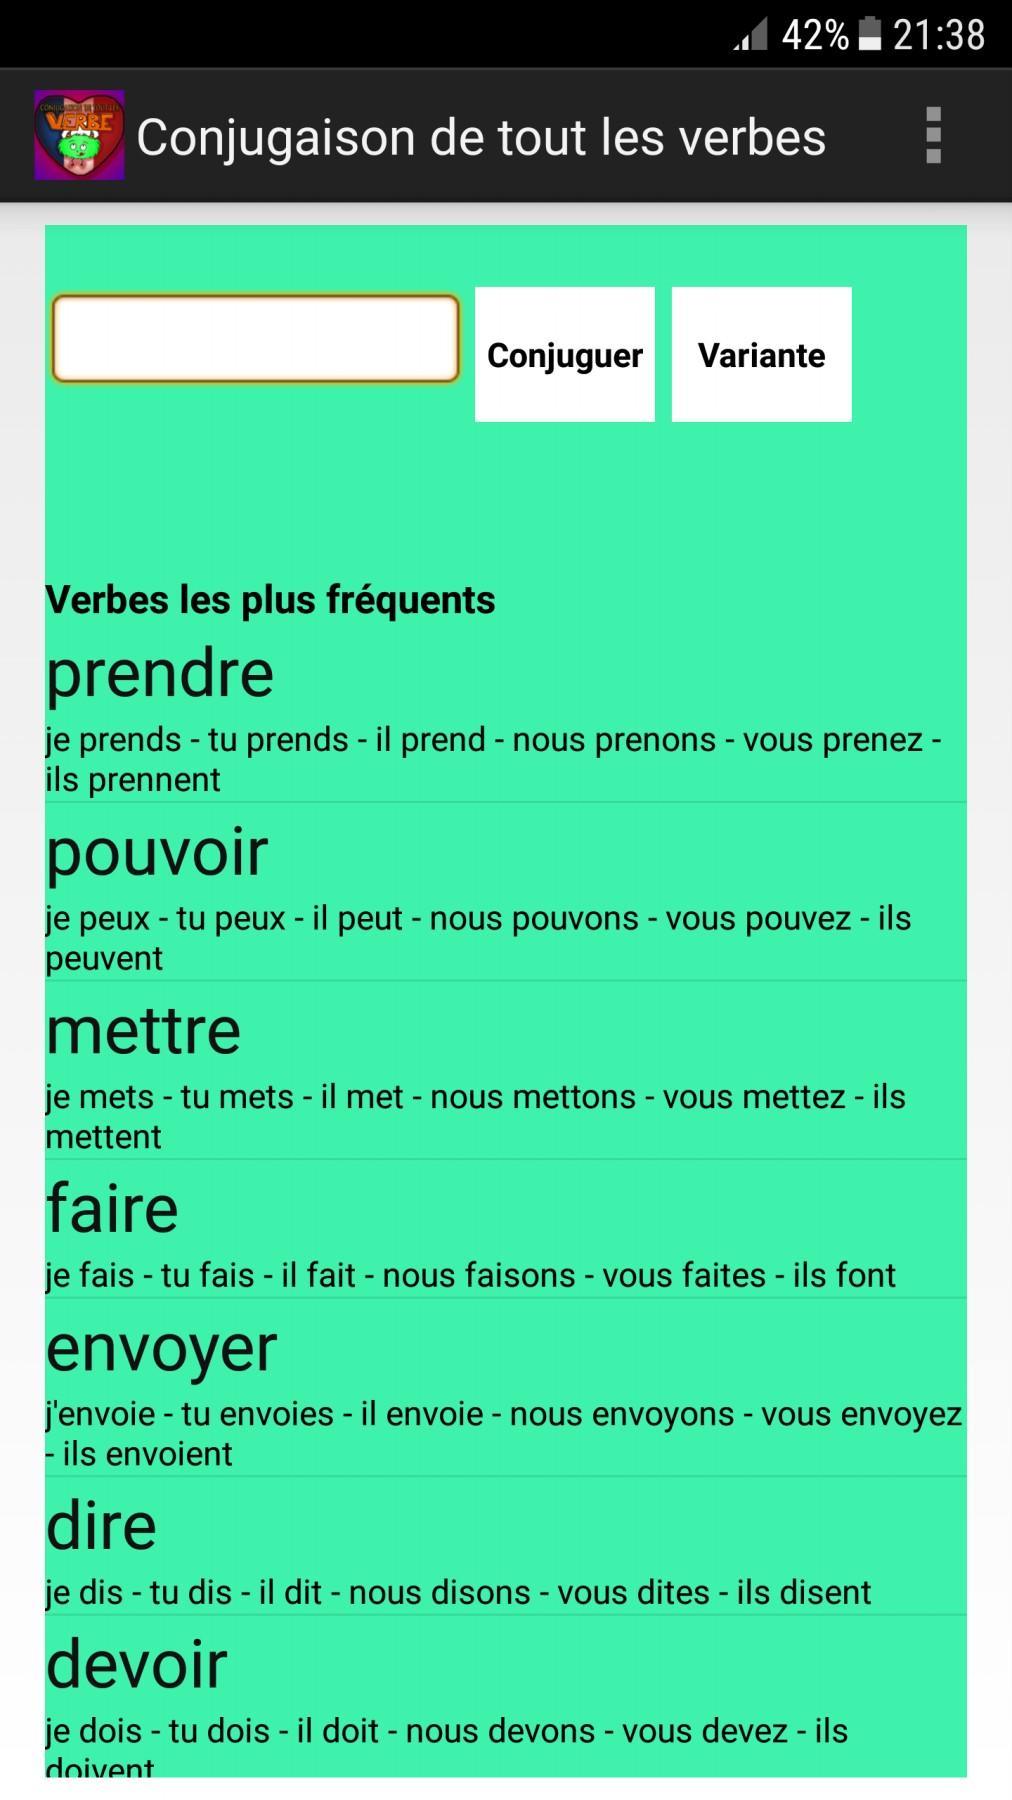 Conjugaison De Tout Les Verbes For Android Apk Download